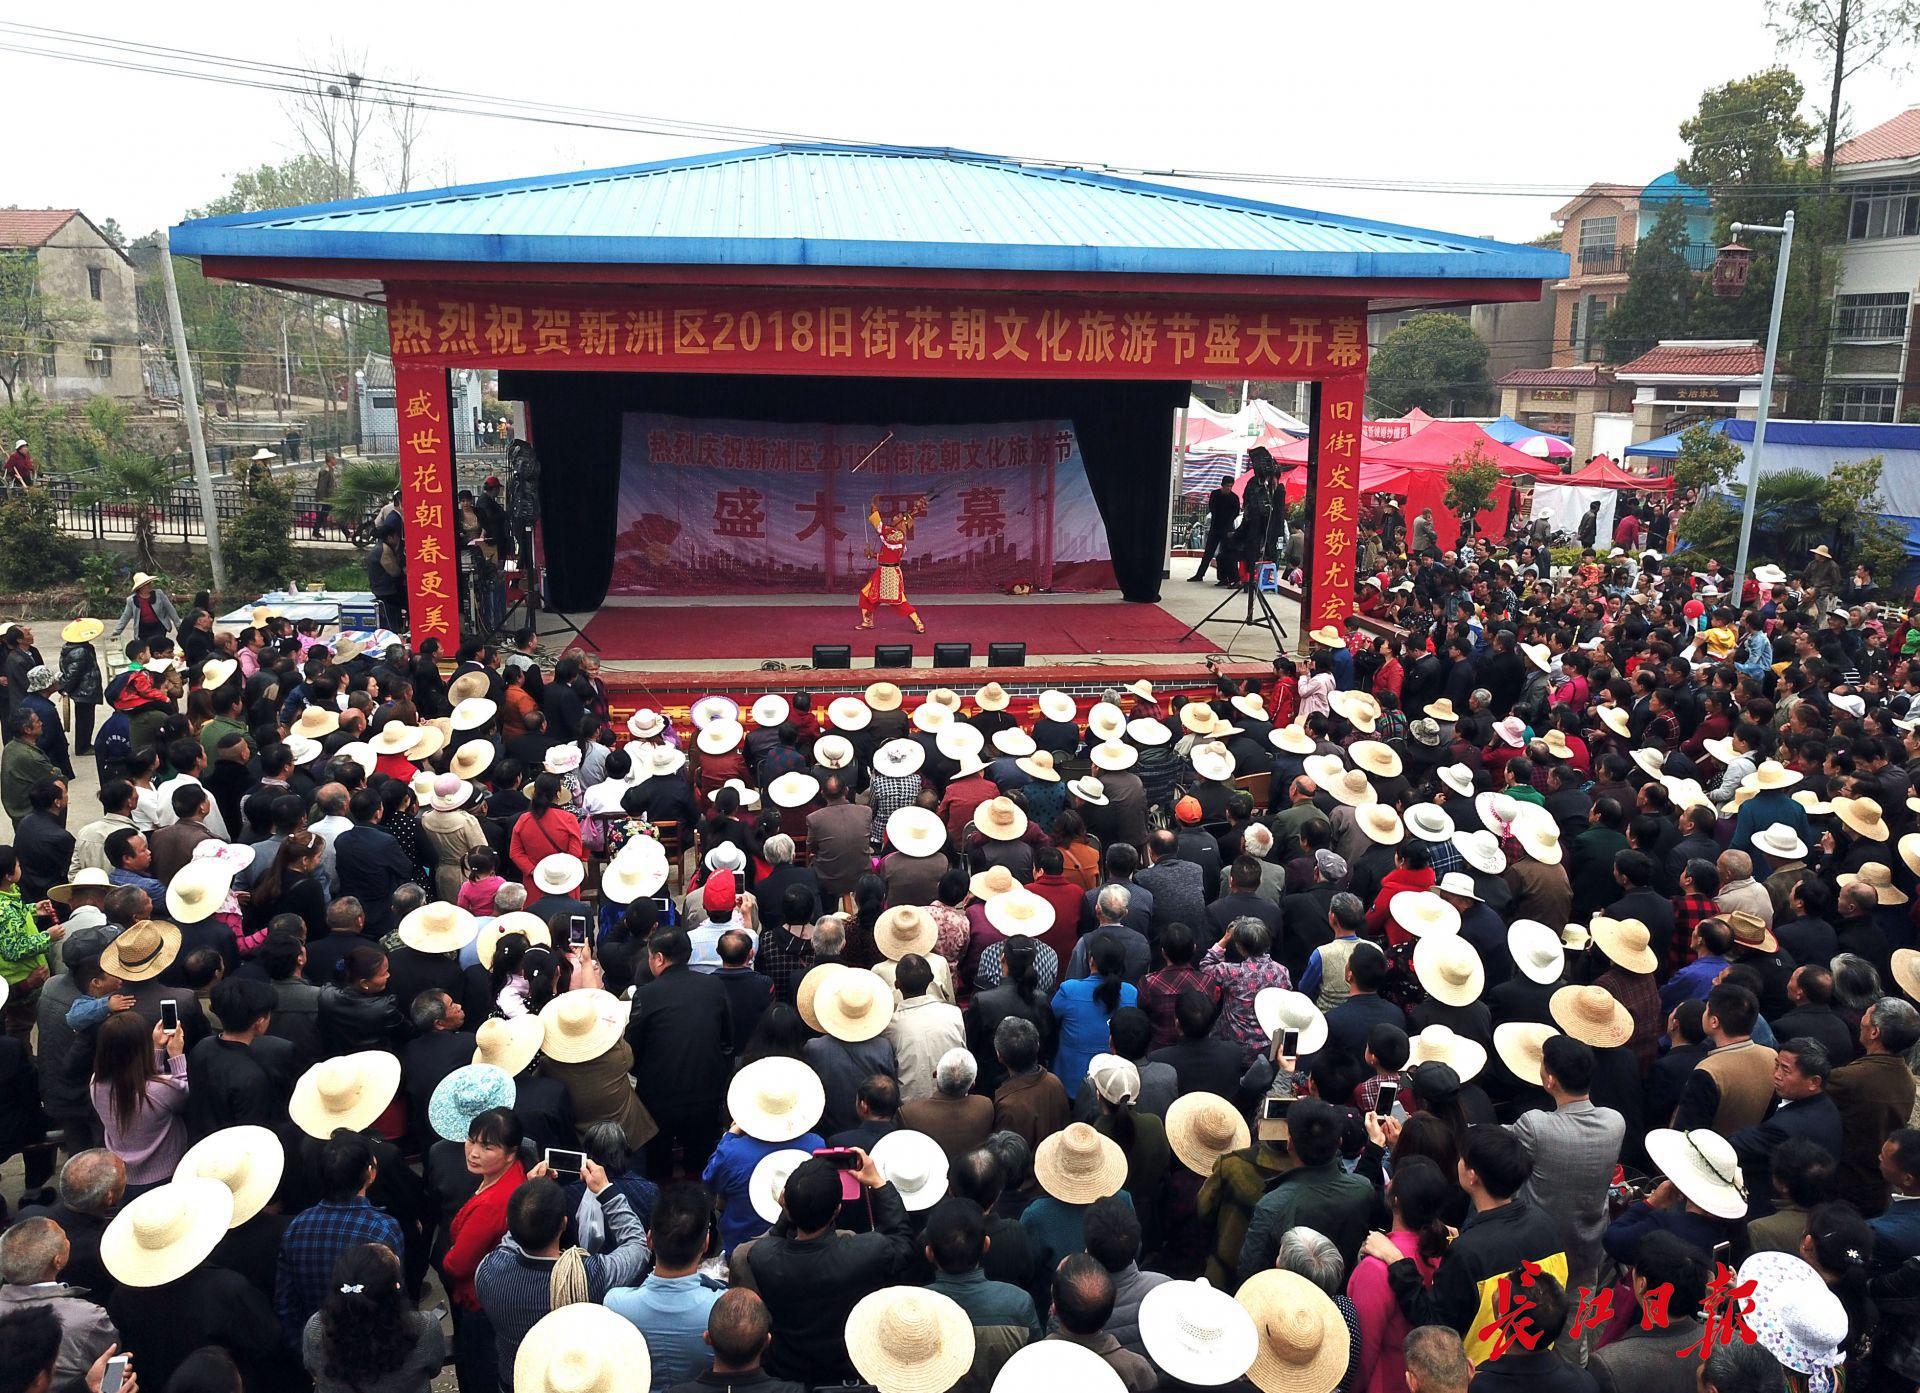 八百年新洲旧街花朝节热闹举行 10万游人来汉